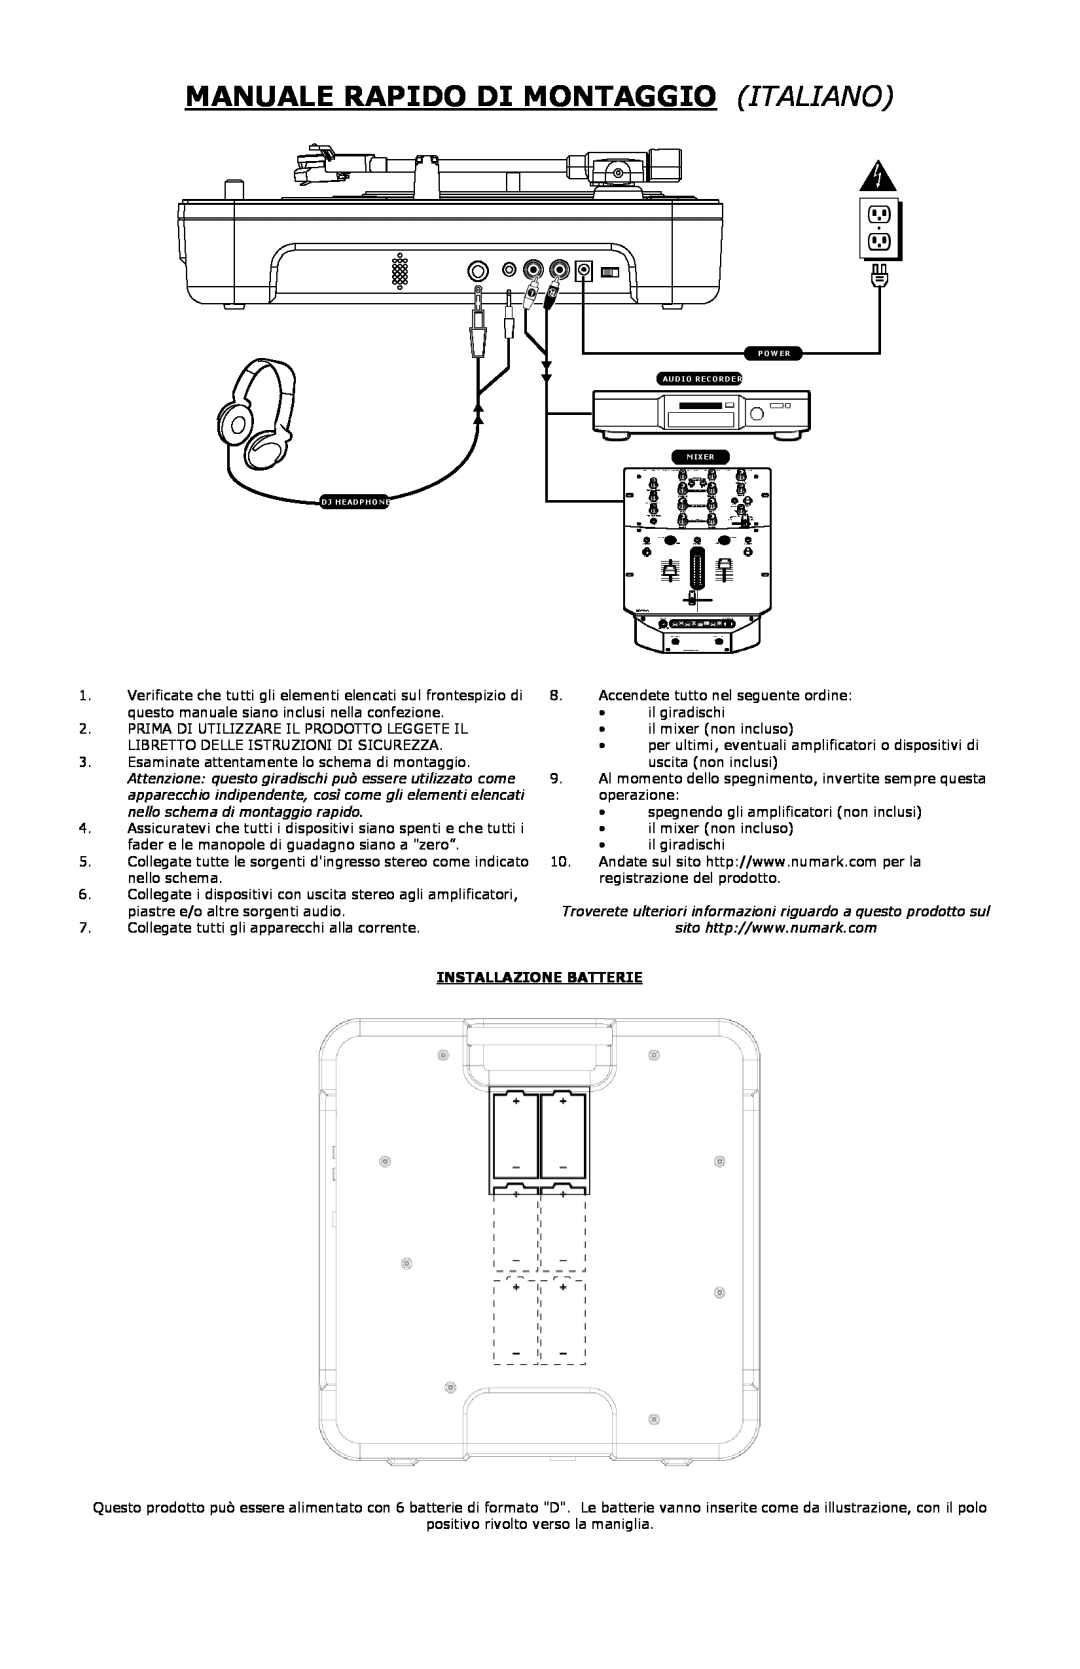 Numark Industries PT-01 quick start Manuale Rapido Di Montaggioitaliano, Installazione Batterie 